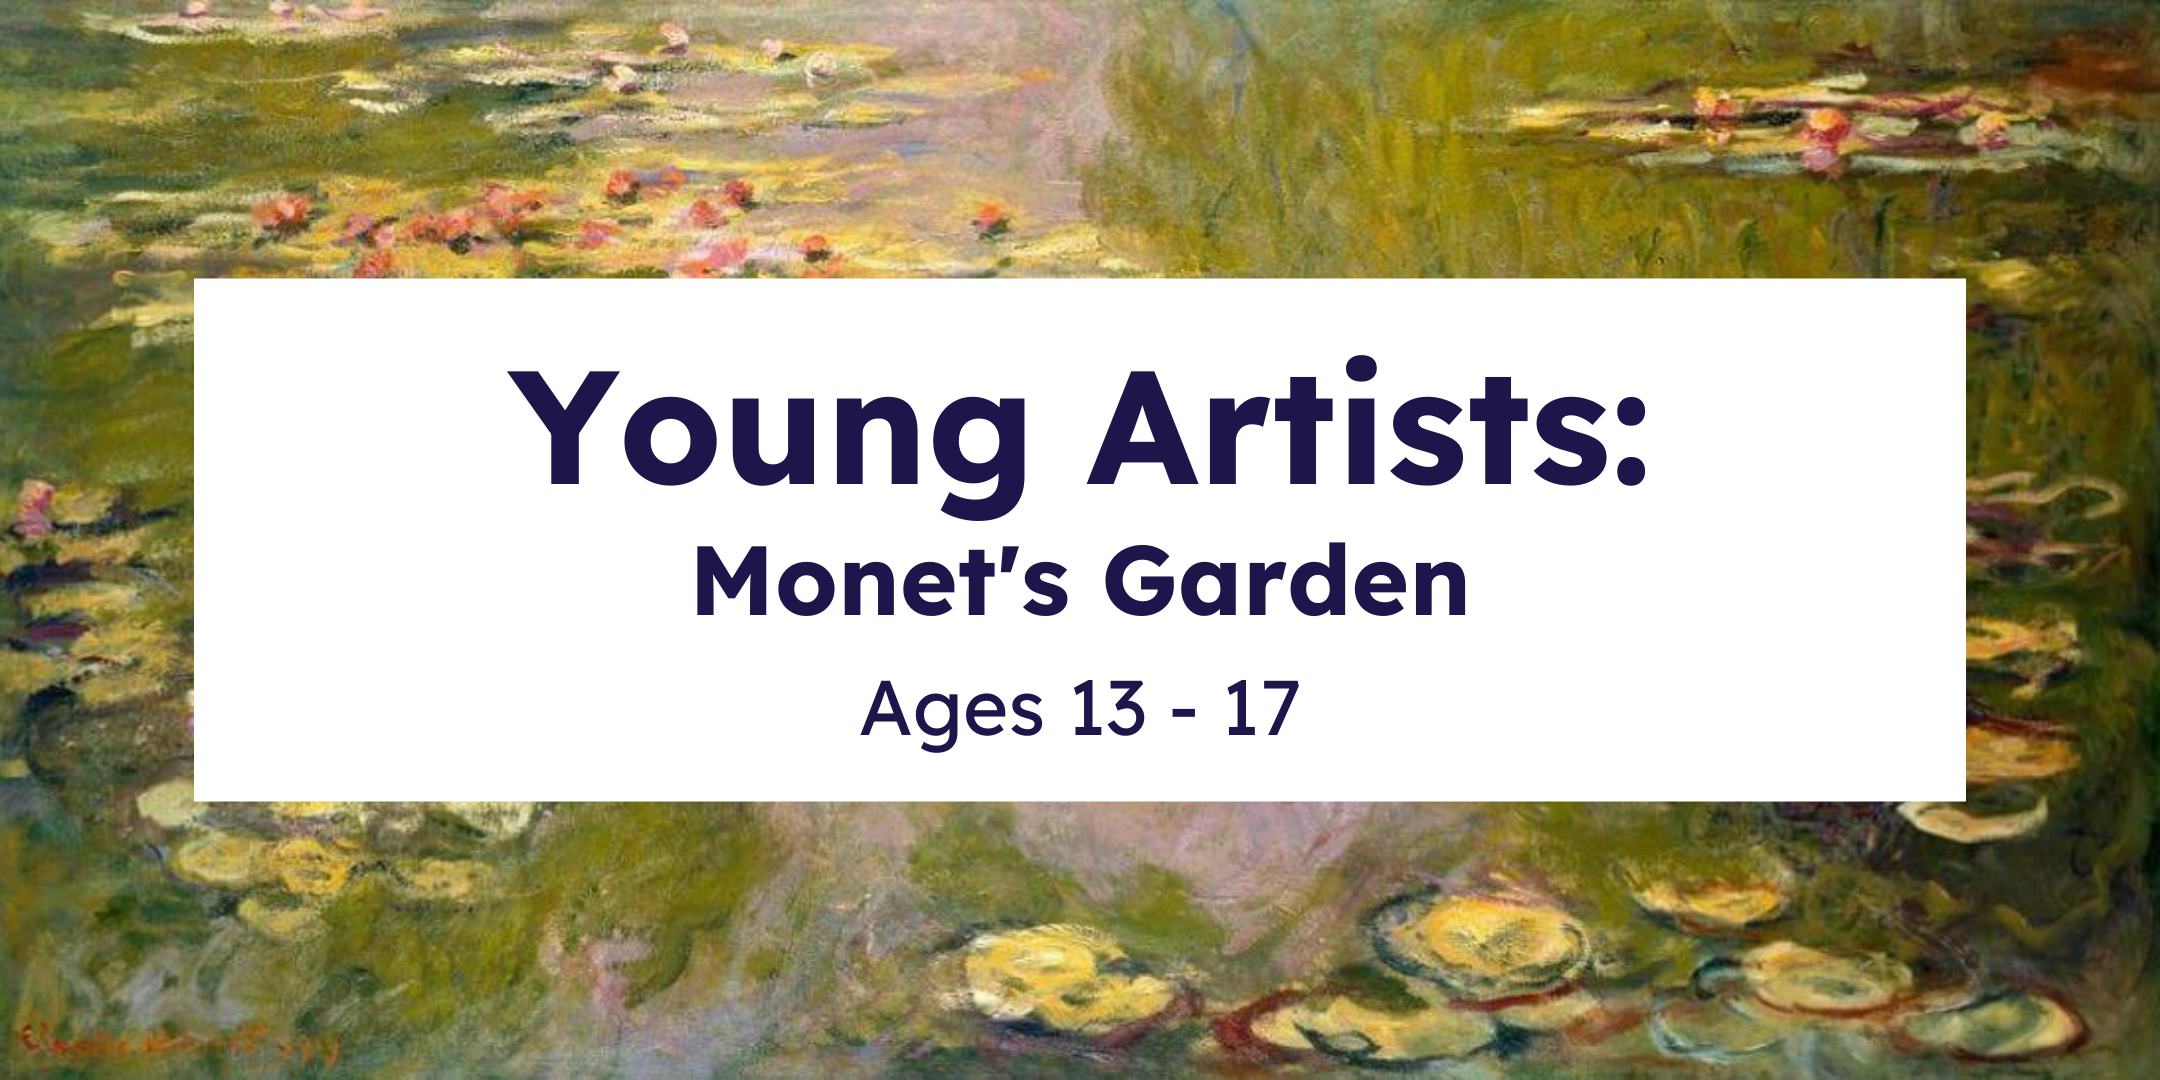 Monet's Garden program